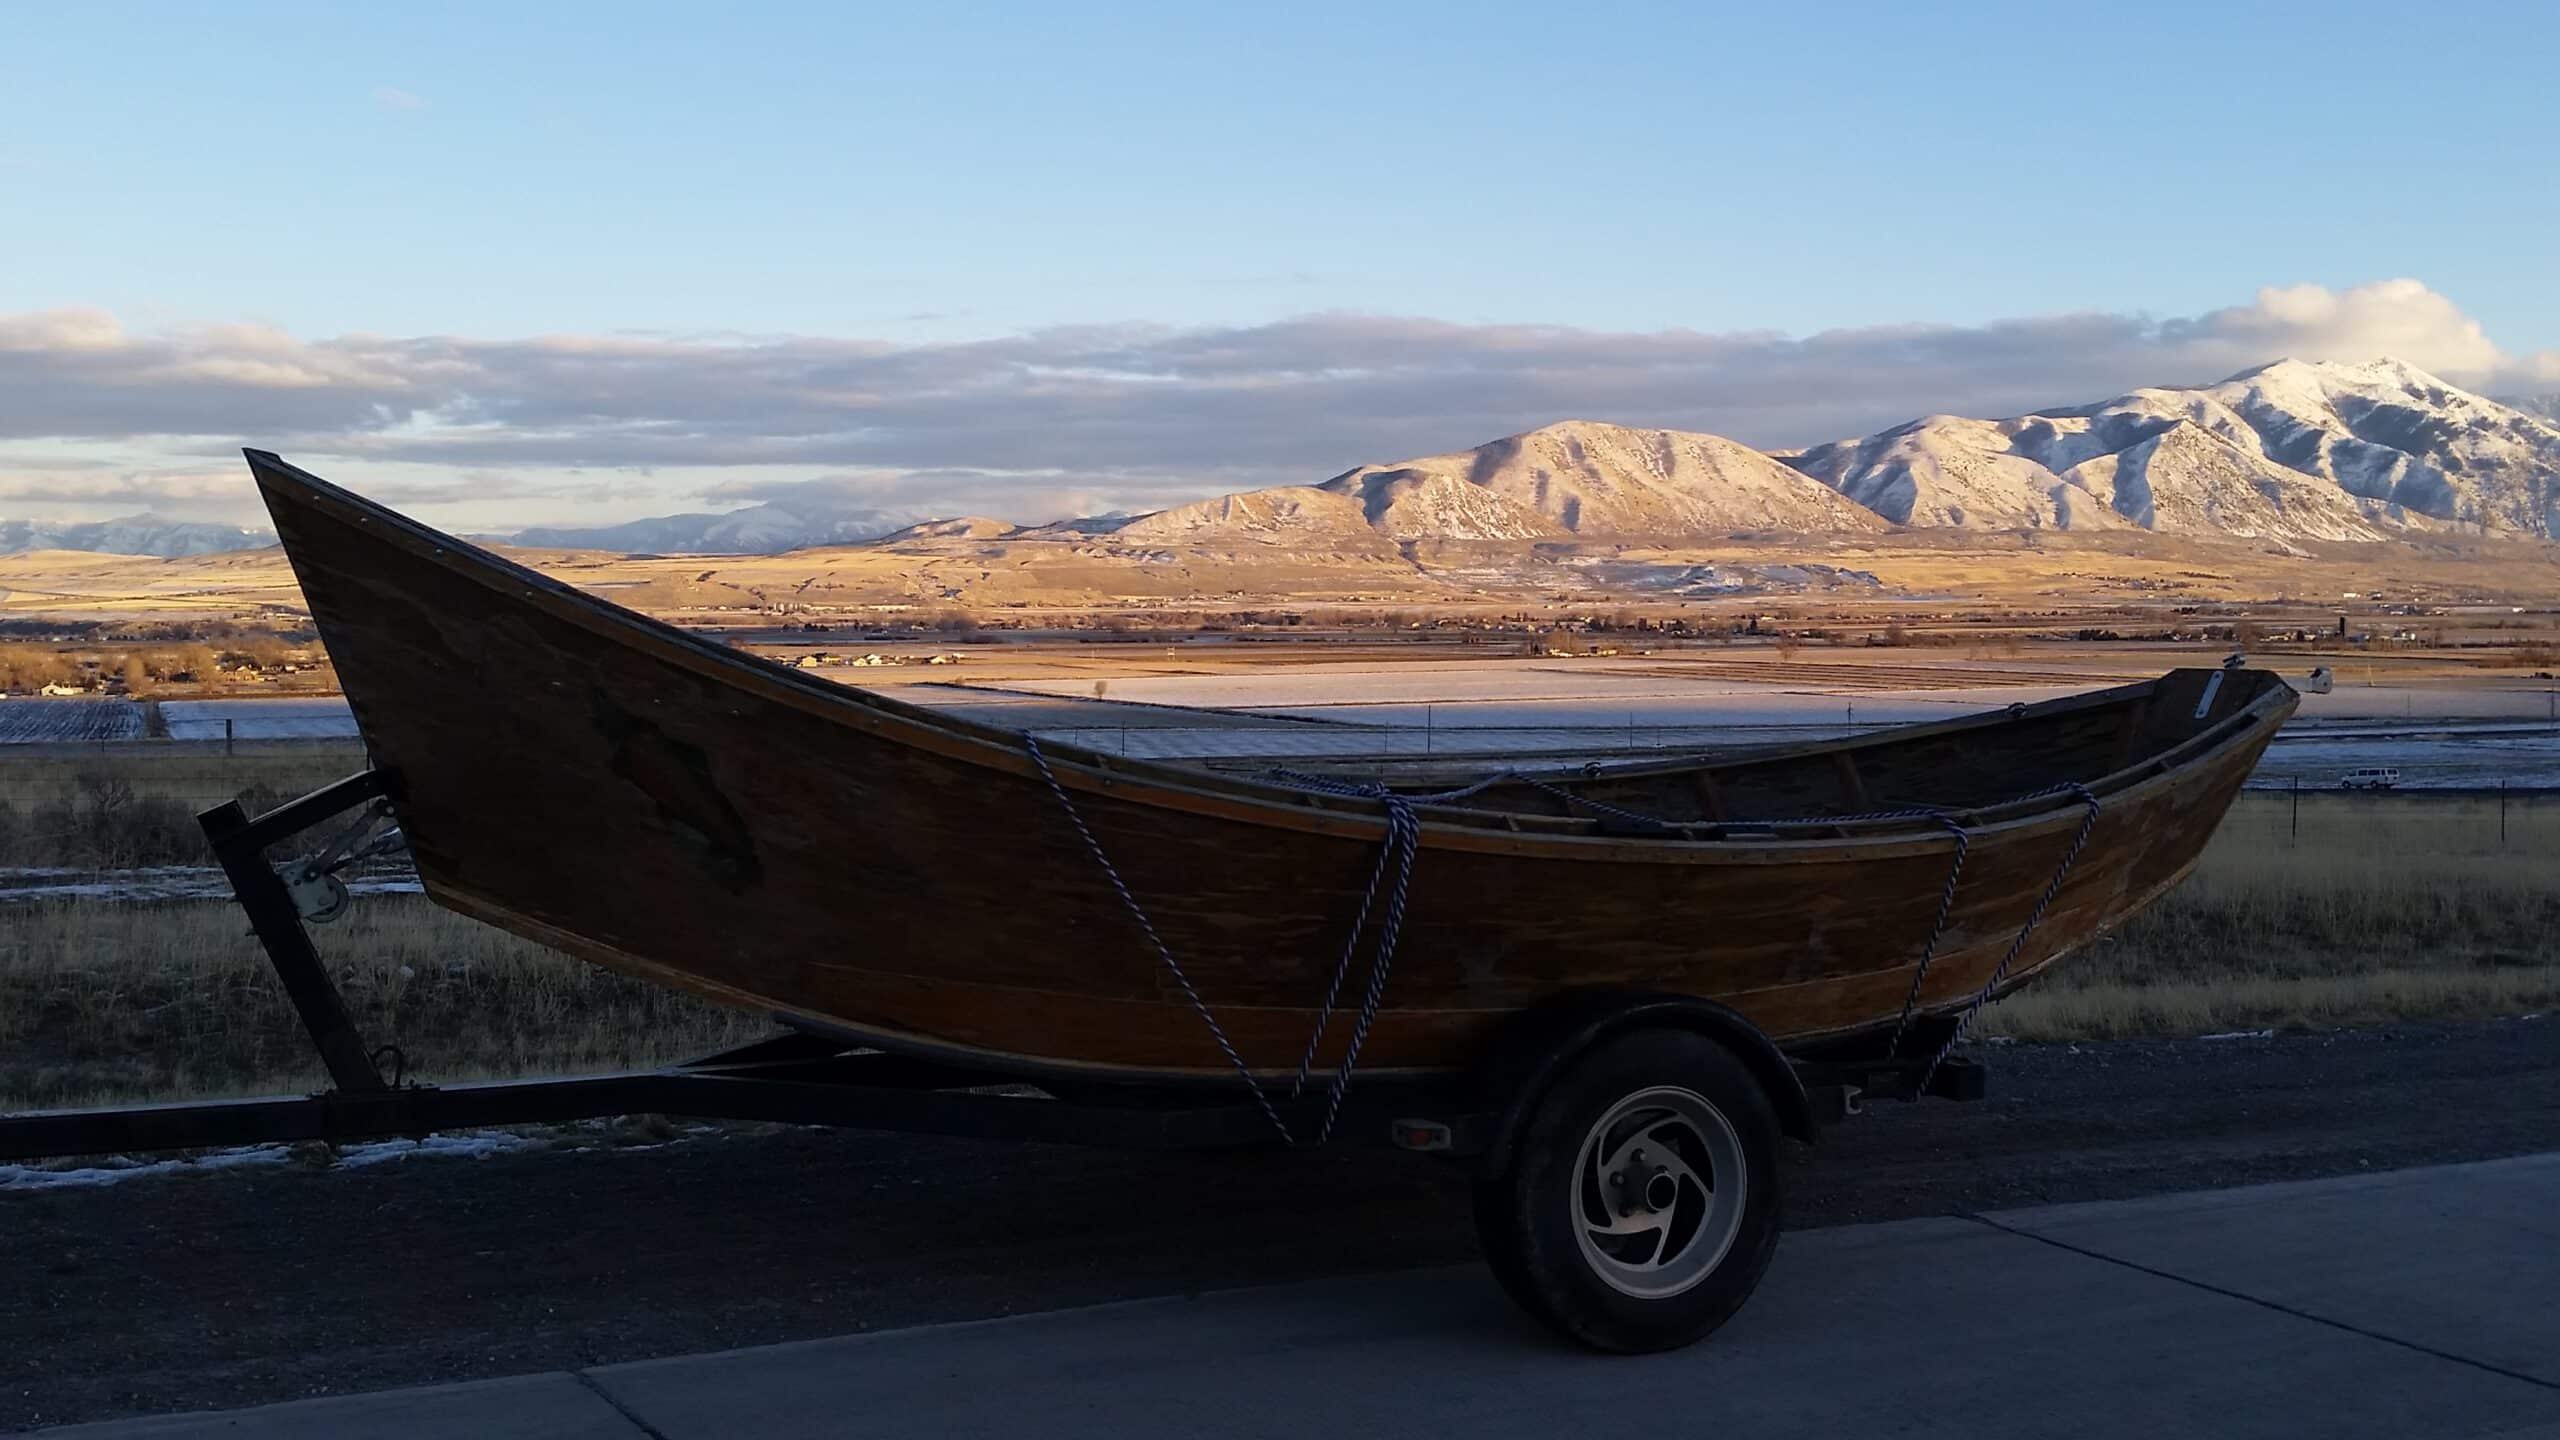 Wooden driftboat - My new fixer upper project.